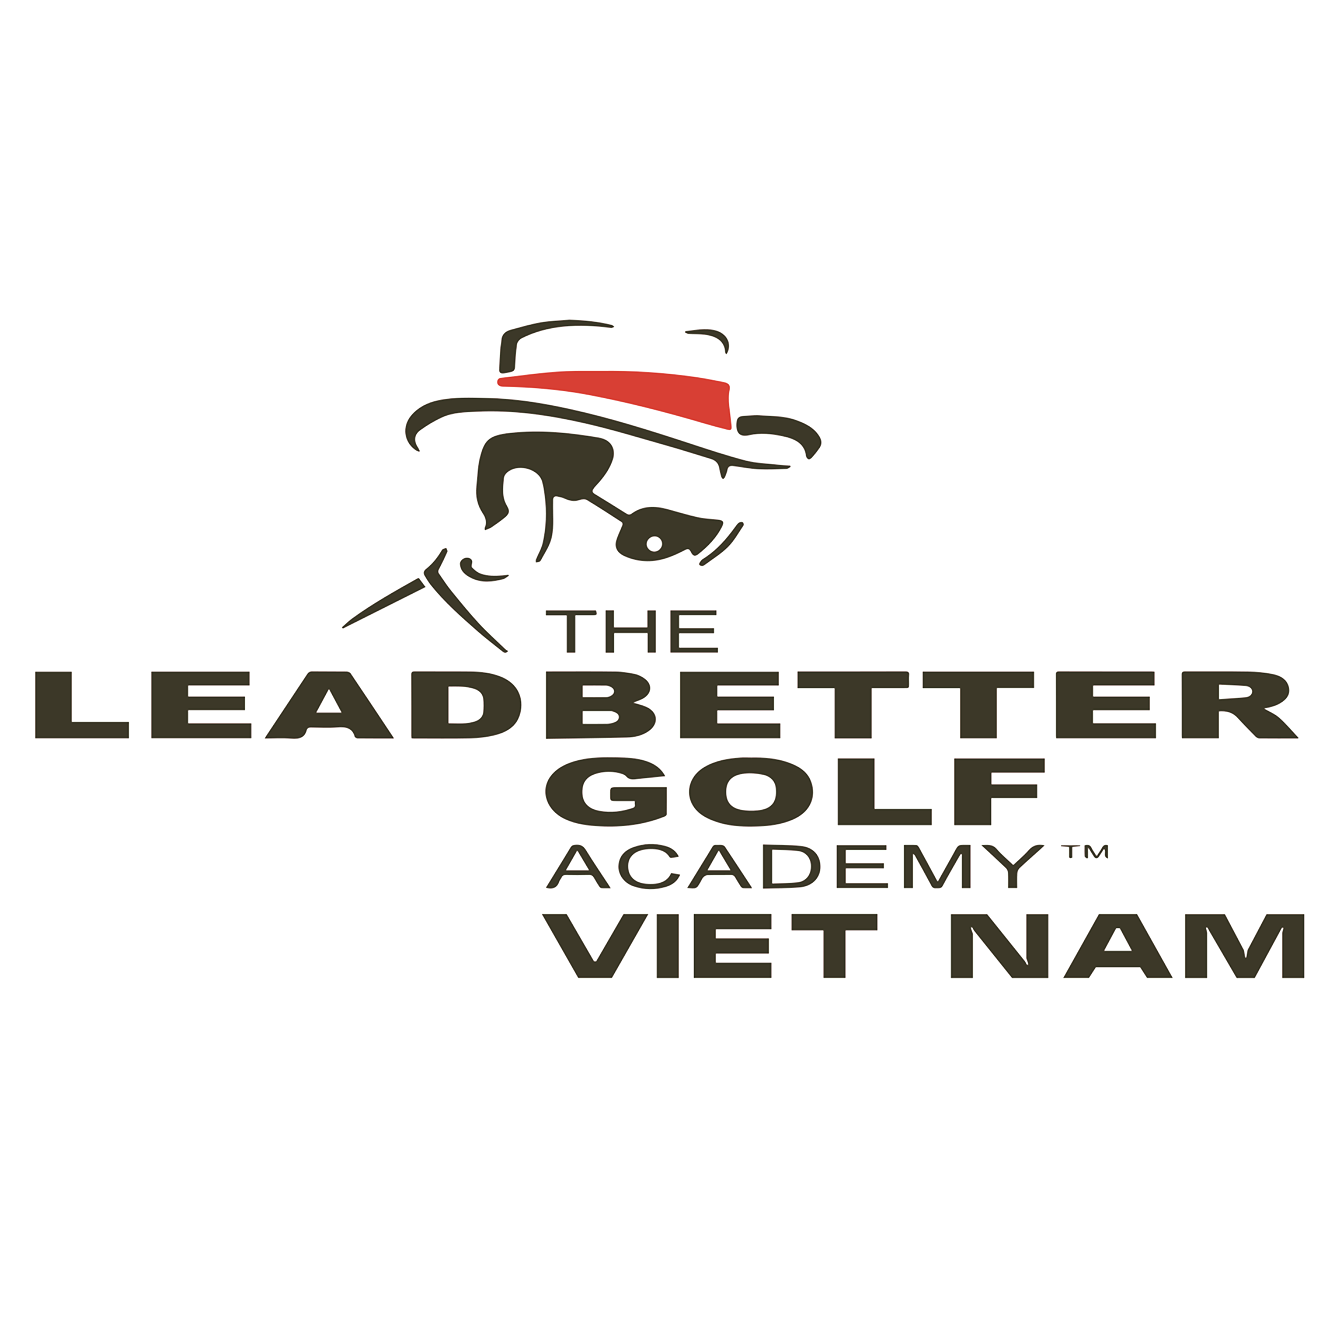 Leadbetter Golf Academy Vietnam